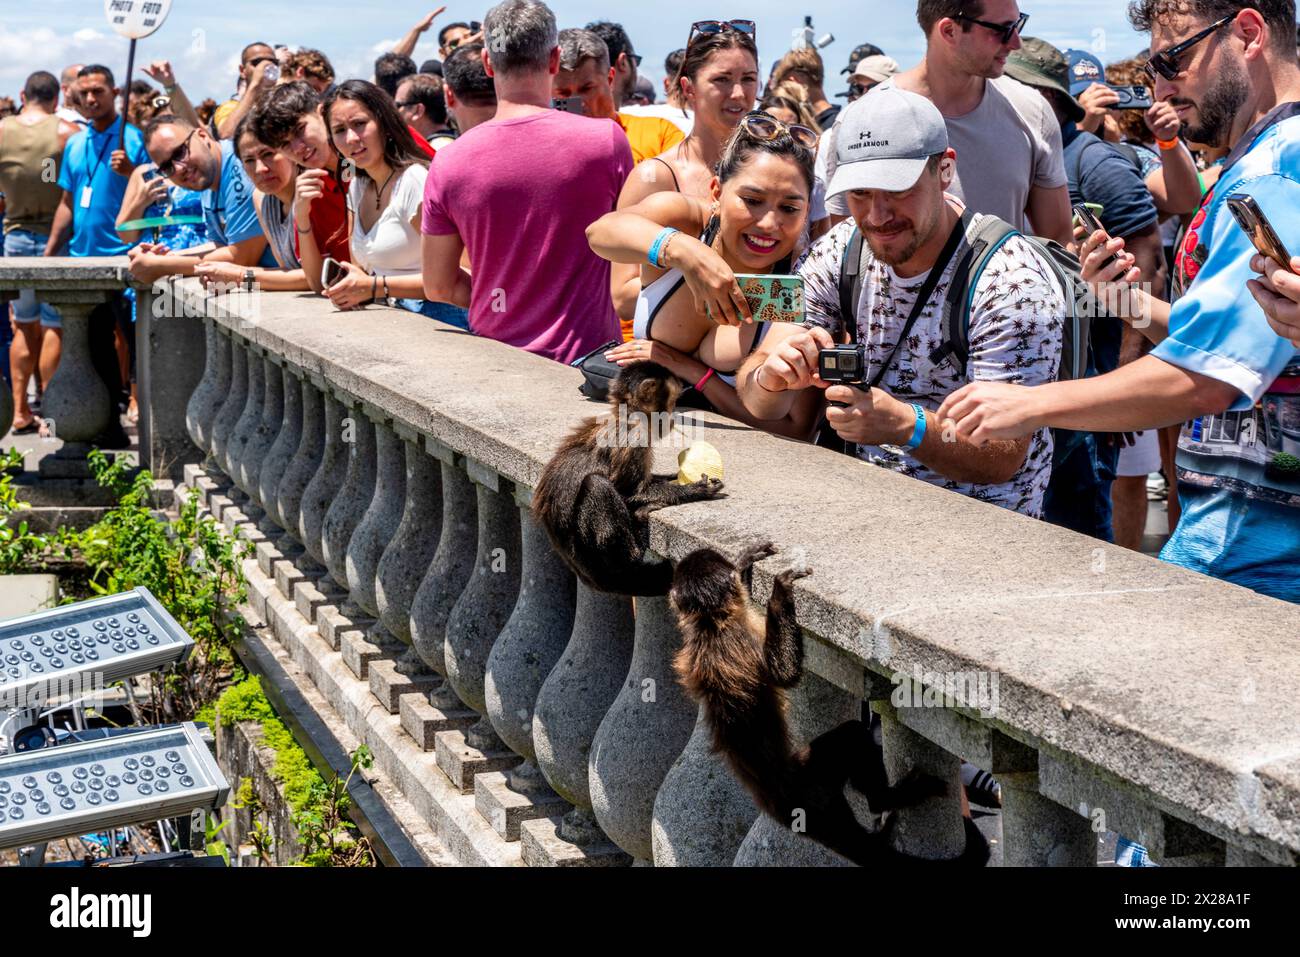 Turisti/visitatori che danno da mangiare alle scimmie presso la statua del Cristo Redentore, Rio de Janeiro, Brasile. Foto Stock